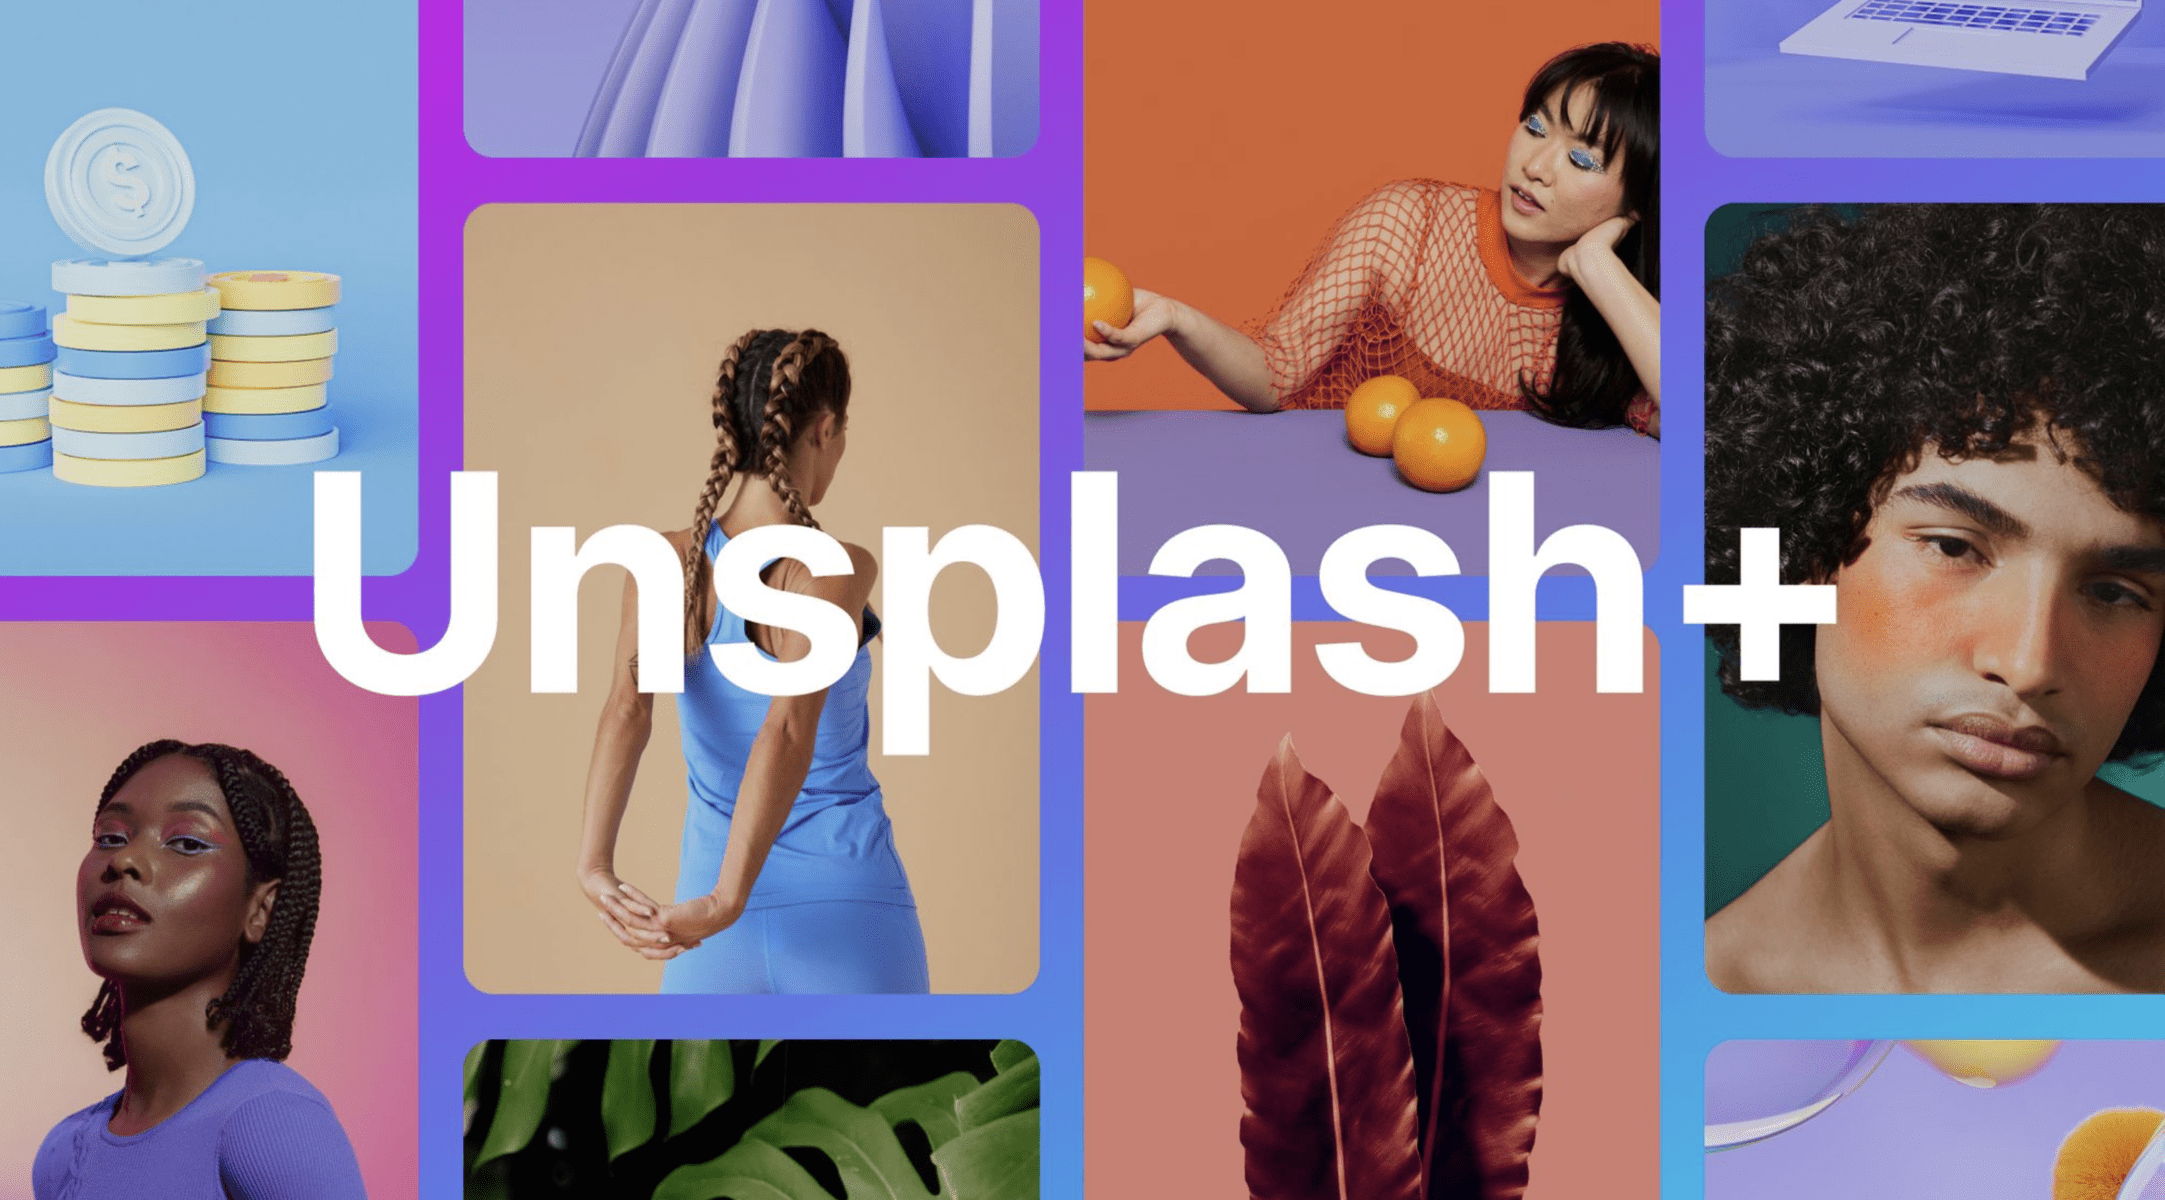  Unsplash, di proprietà di Getty, lancia il nuovo abbonamento Unsplash+